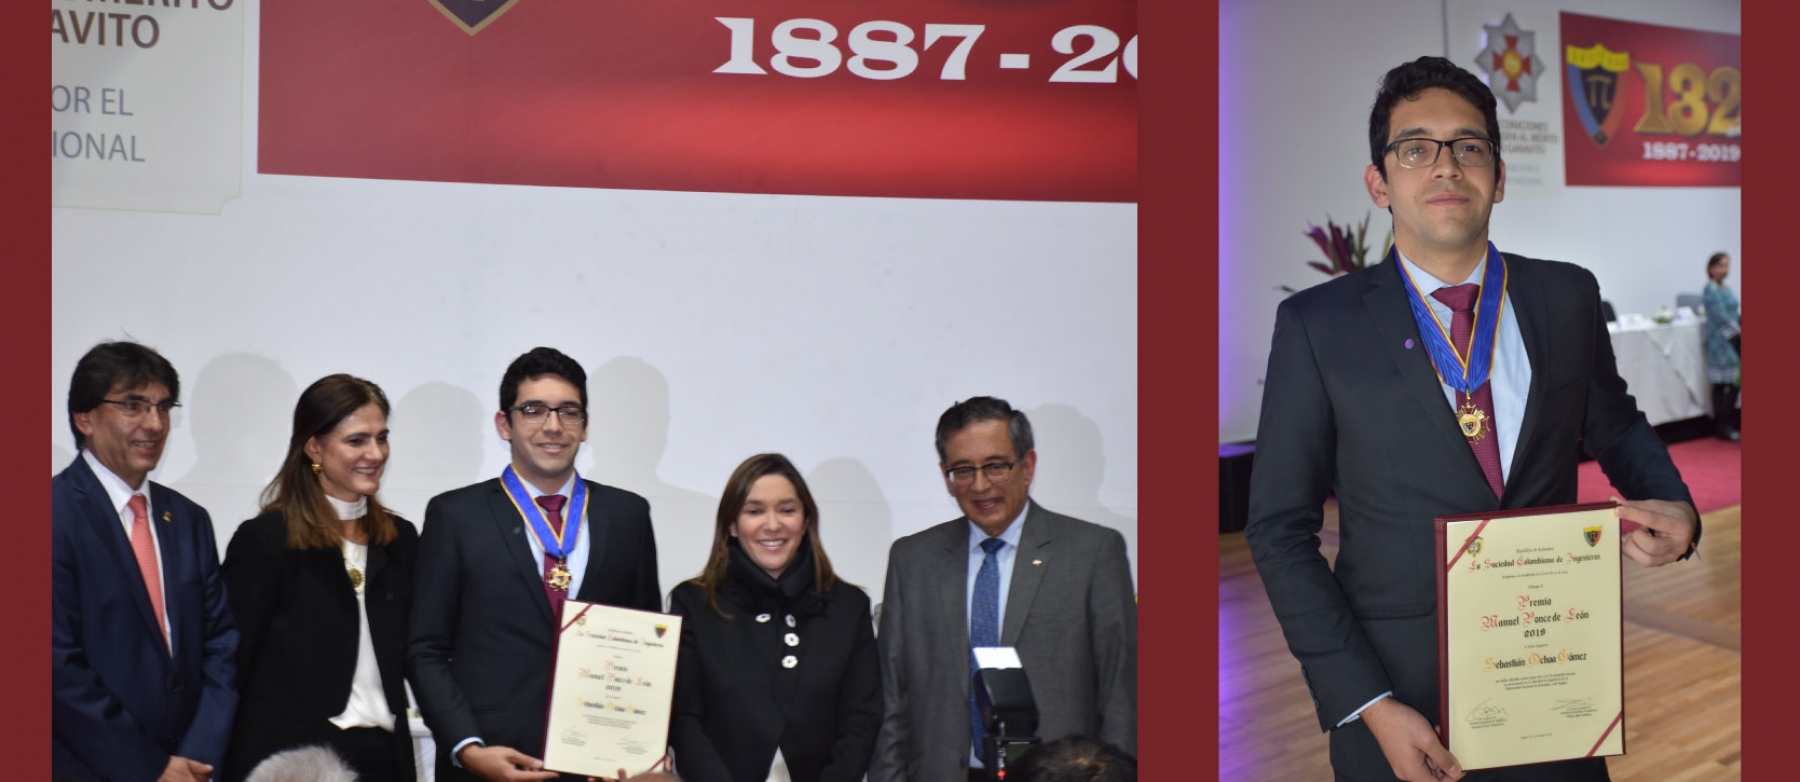 Ingeniero químico condecorado con el premio Ponce De León, en la gala de los premios a la Ingeniería Nacional 2019